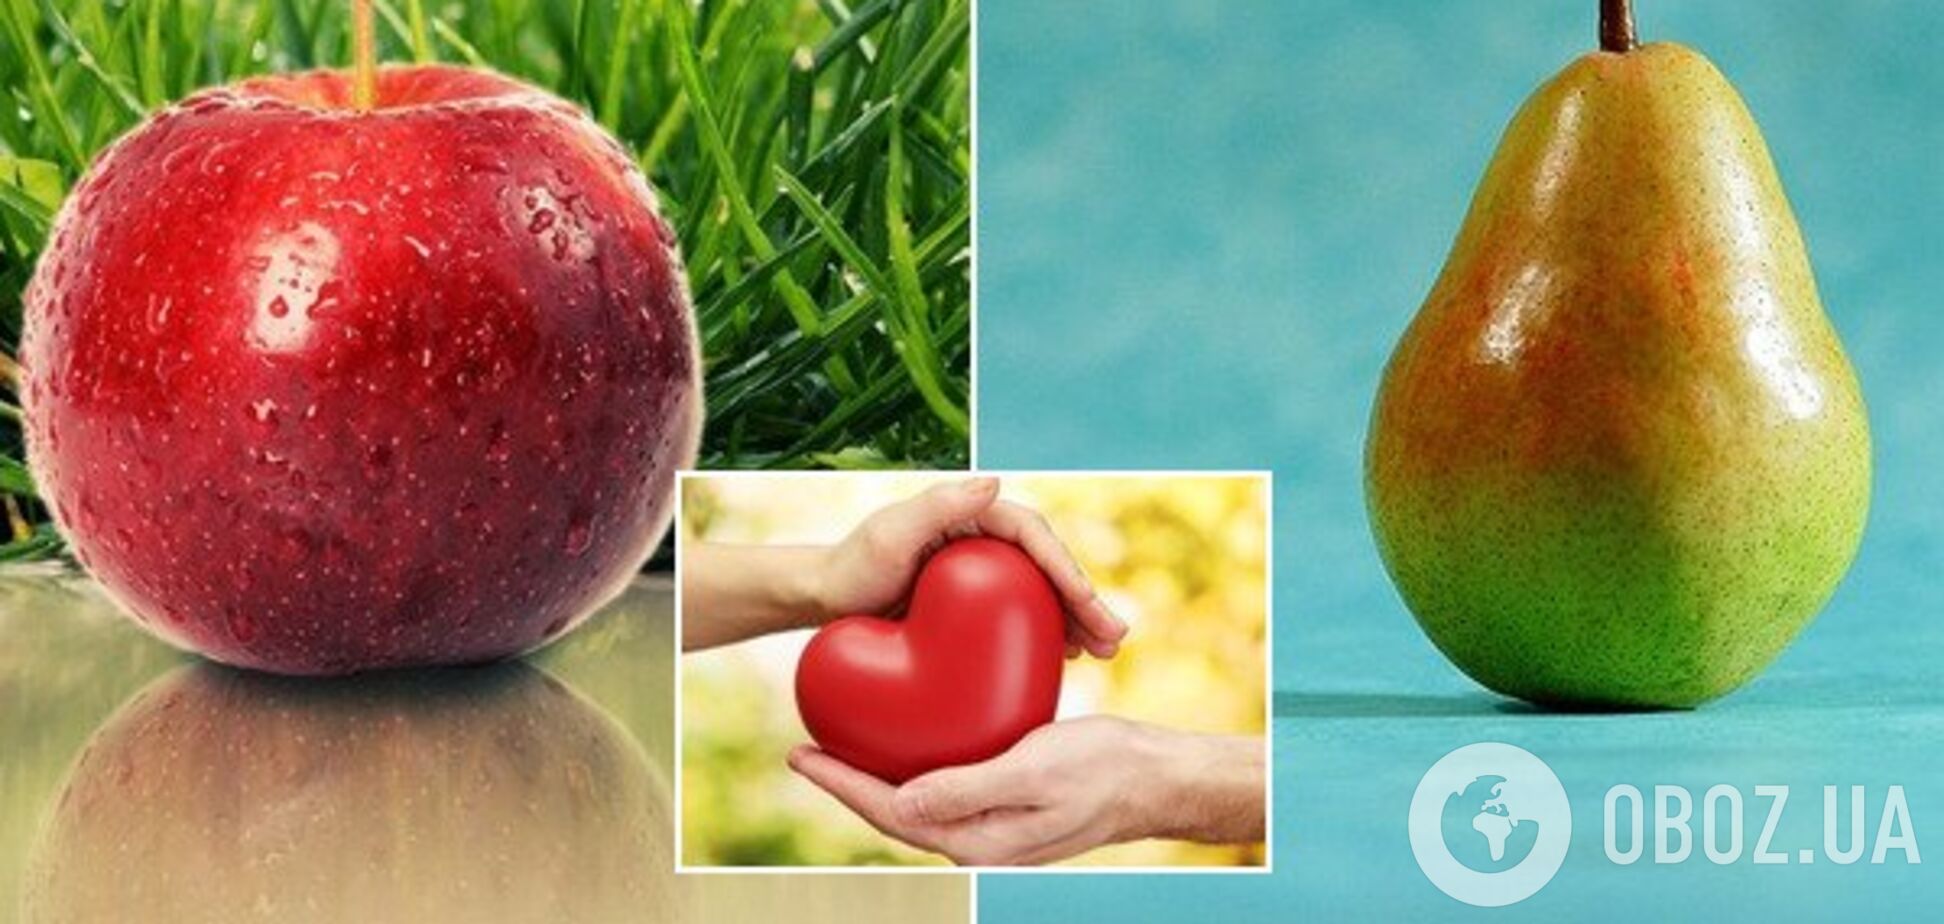 'Яблоко или груша': ученые рассказали, что защищает от болезней сердца